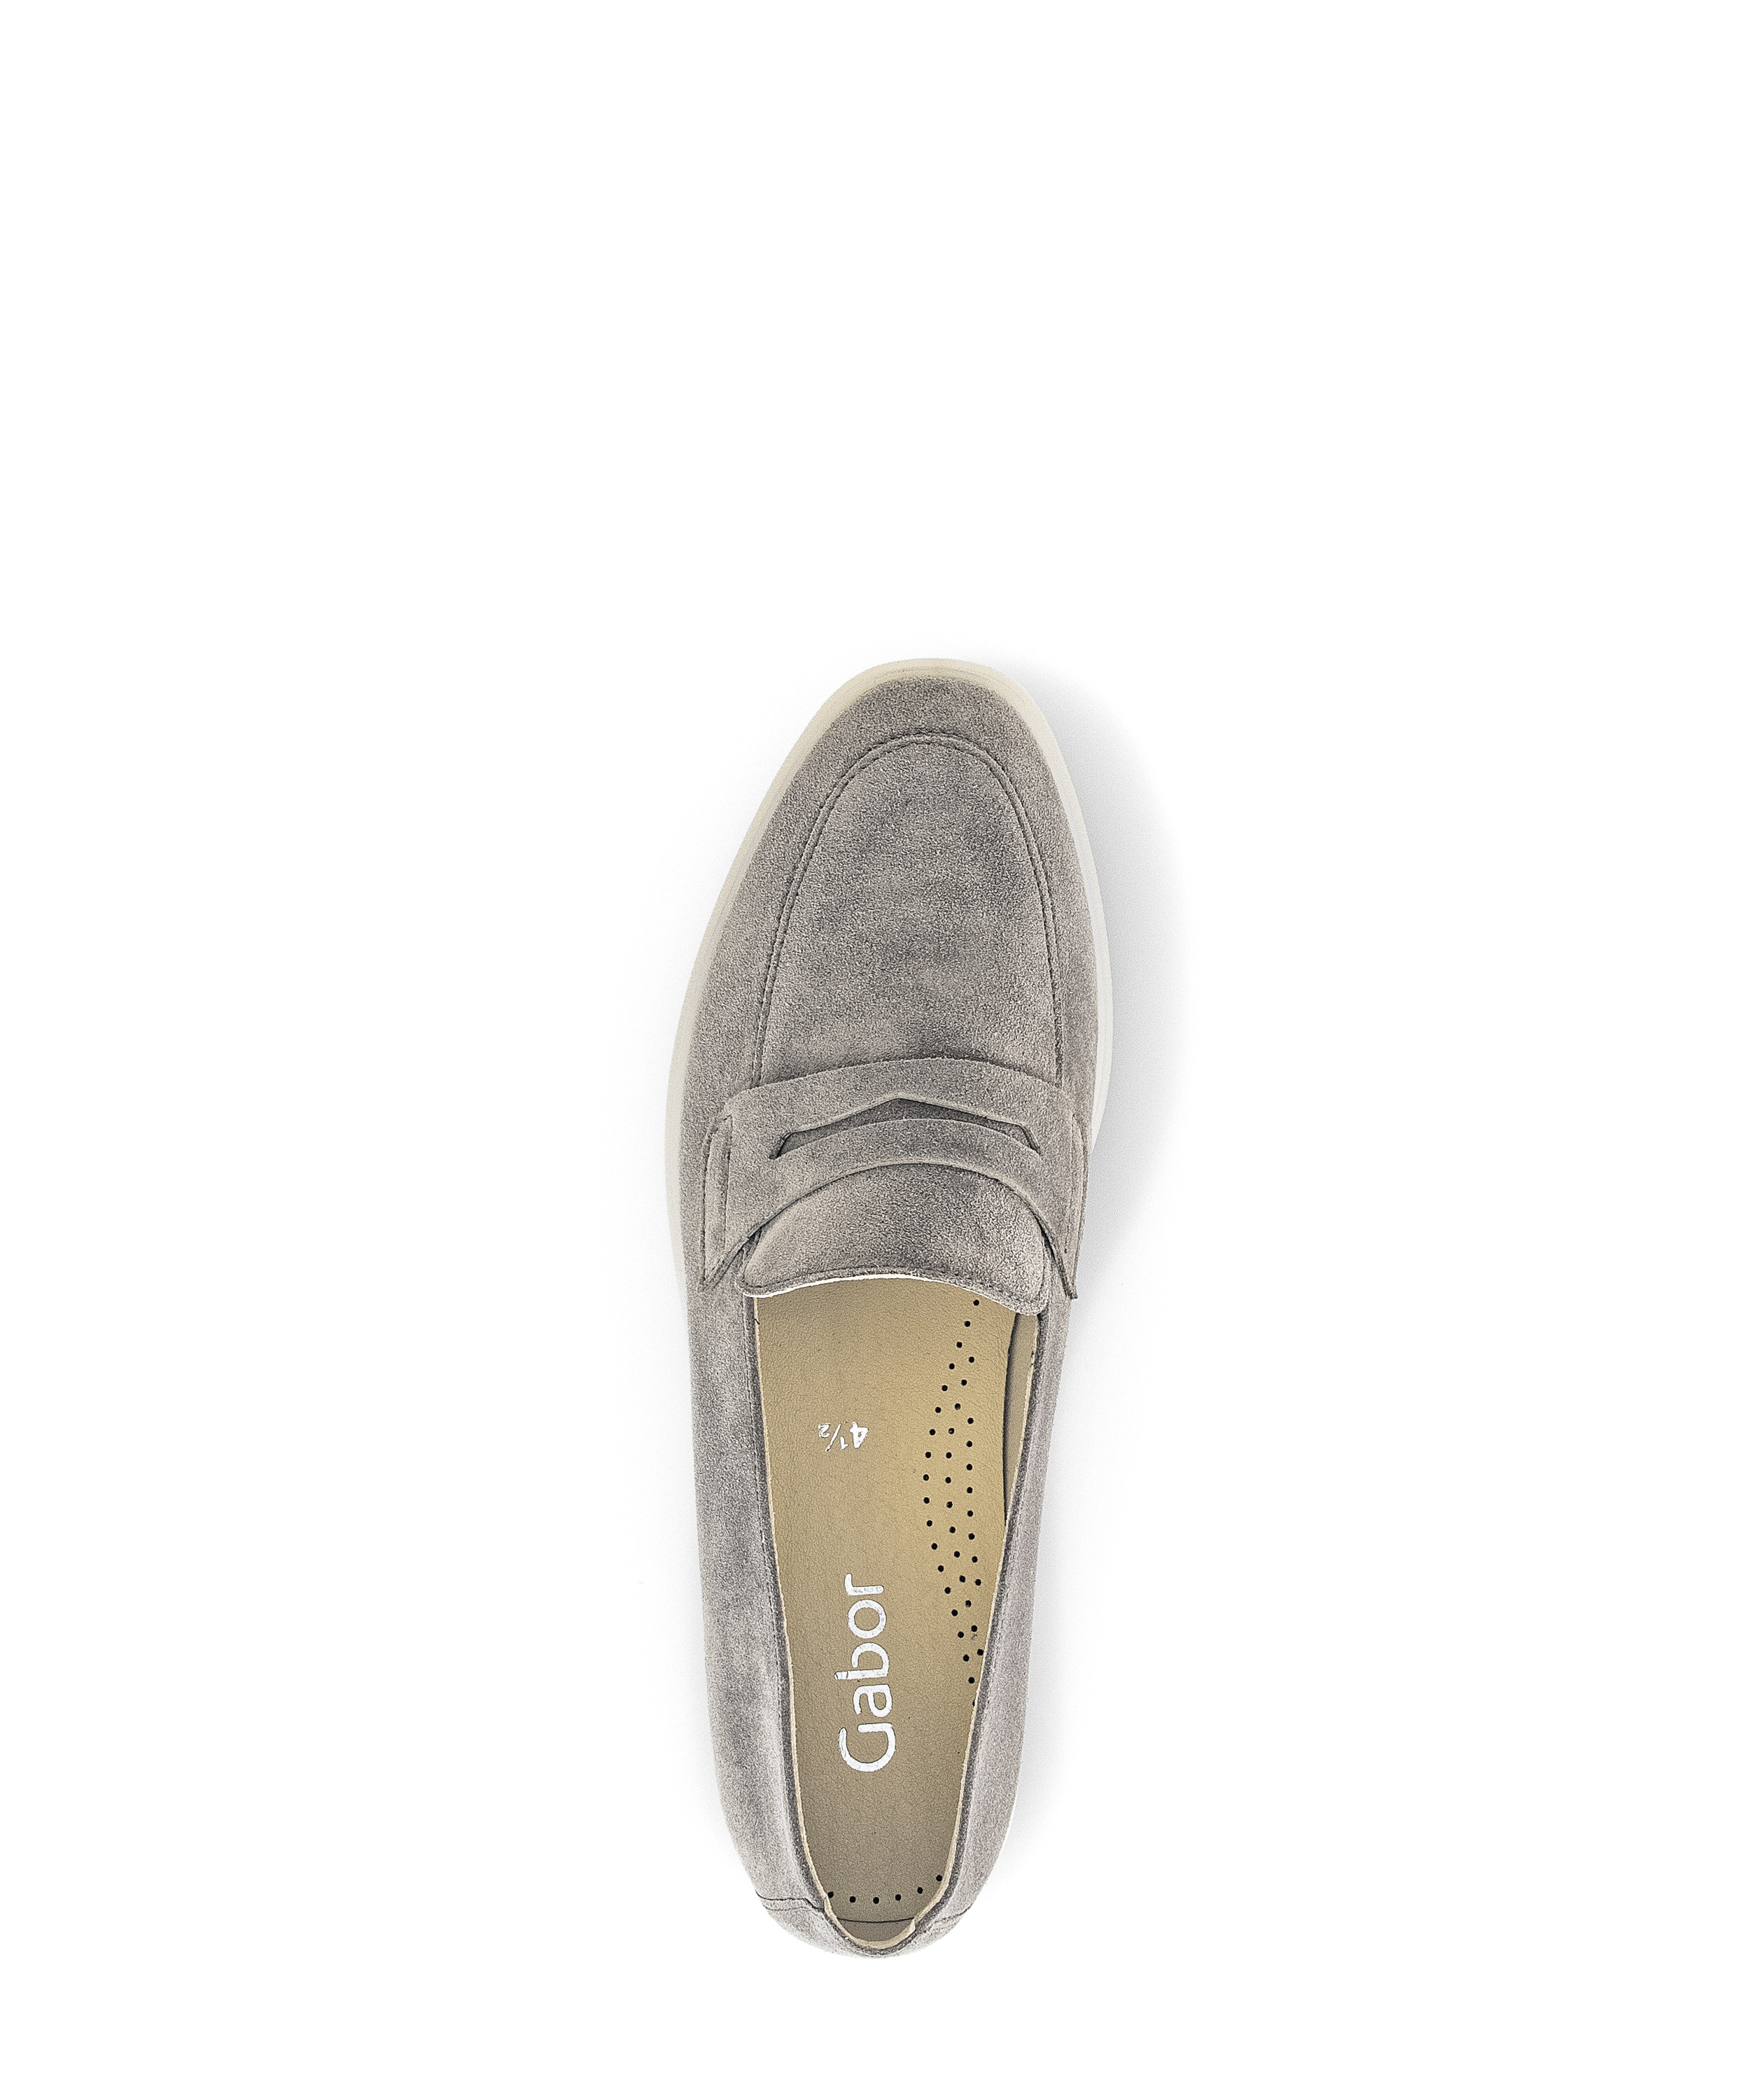 Gabor Shoes Slipper - Braun Leder